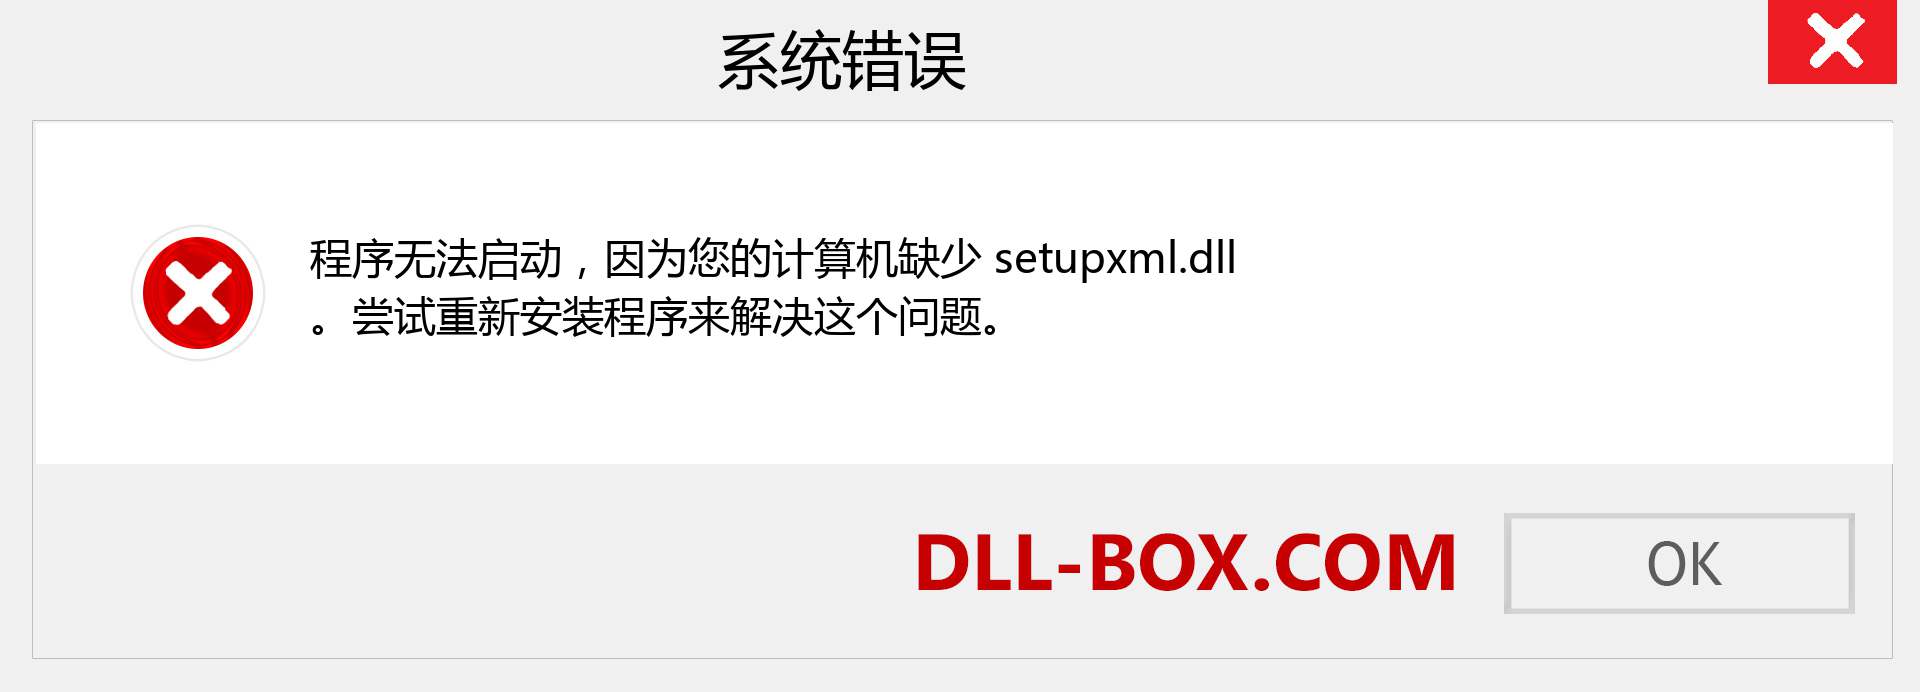 setupxml.dll 文件丢失？。 适用于 Windows 7、8、10 的下载 - 修复 Windows、照片、图像上的 setupxml dll 丢失错误